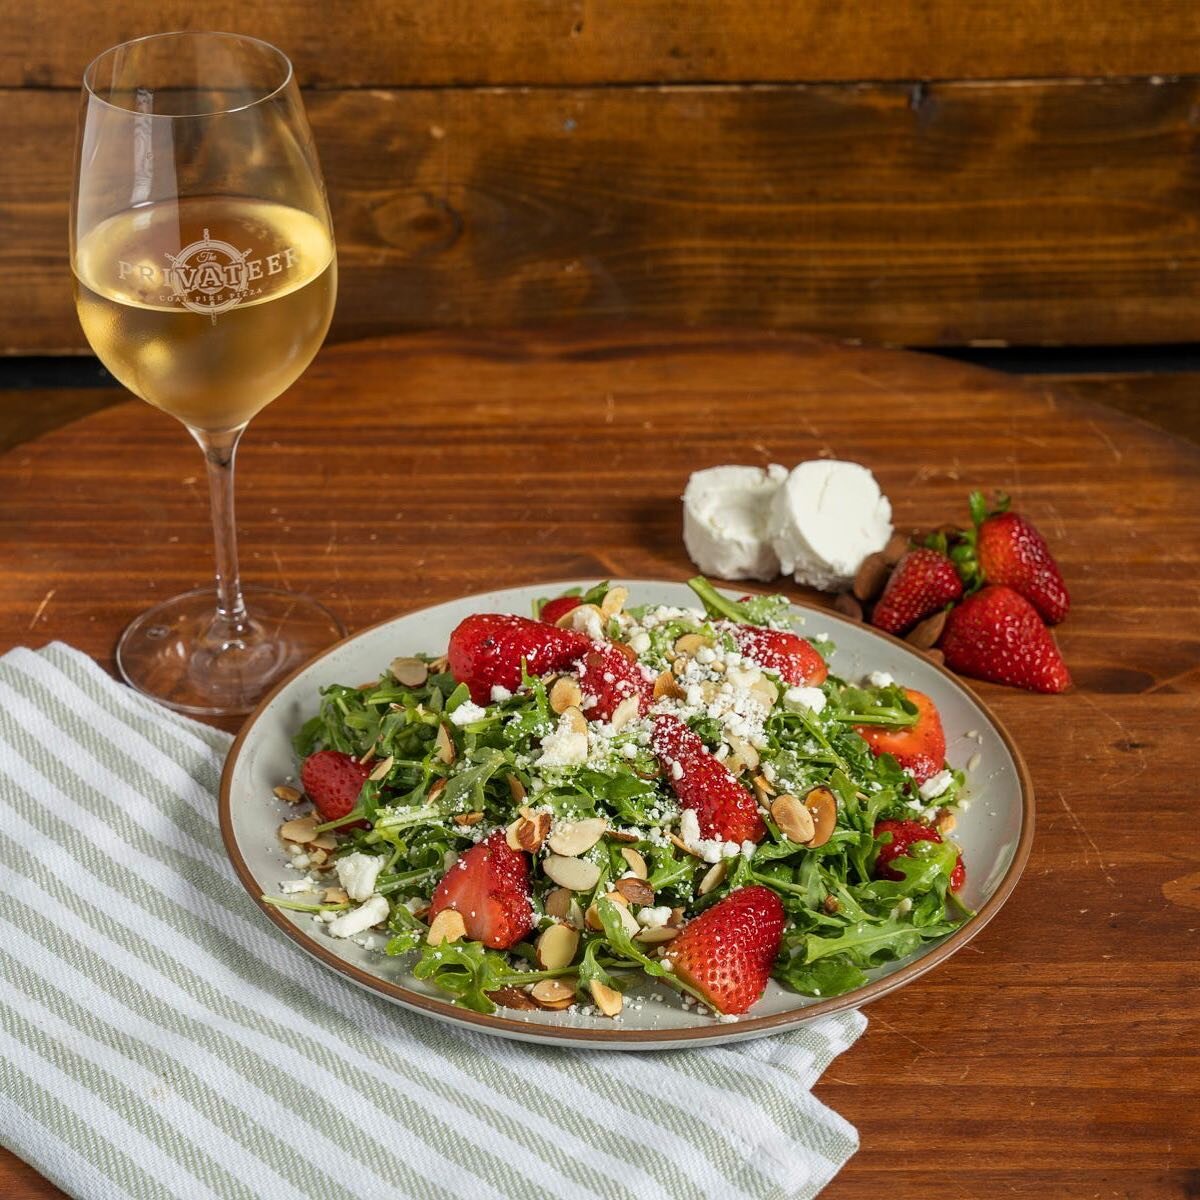 Strawberry Salad is back - summer bod ready. @cyclopsfarms